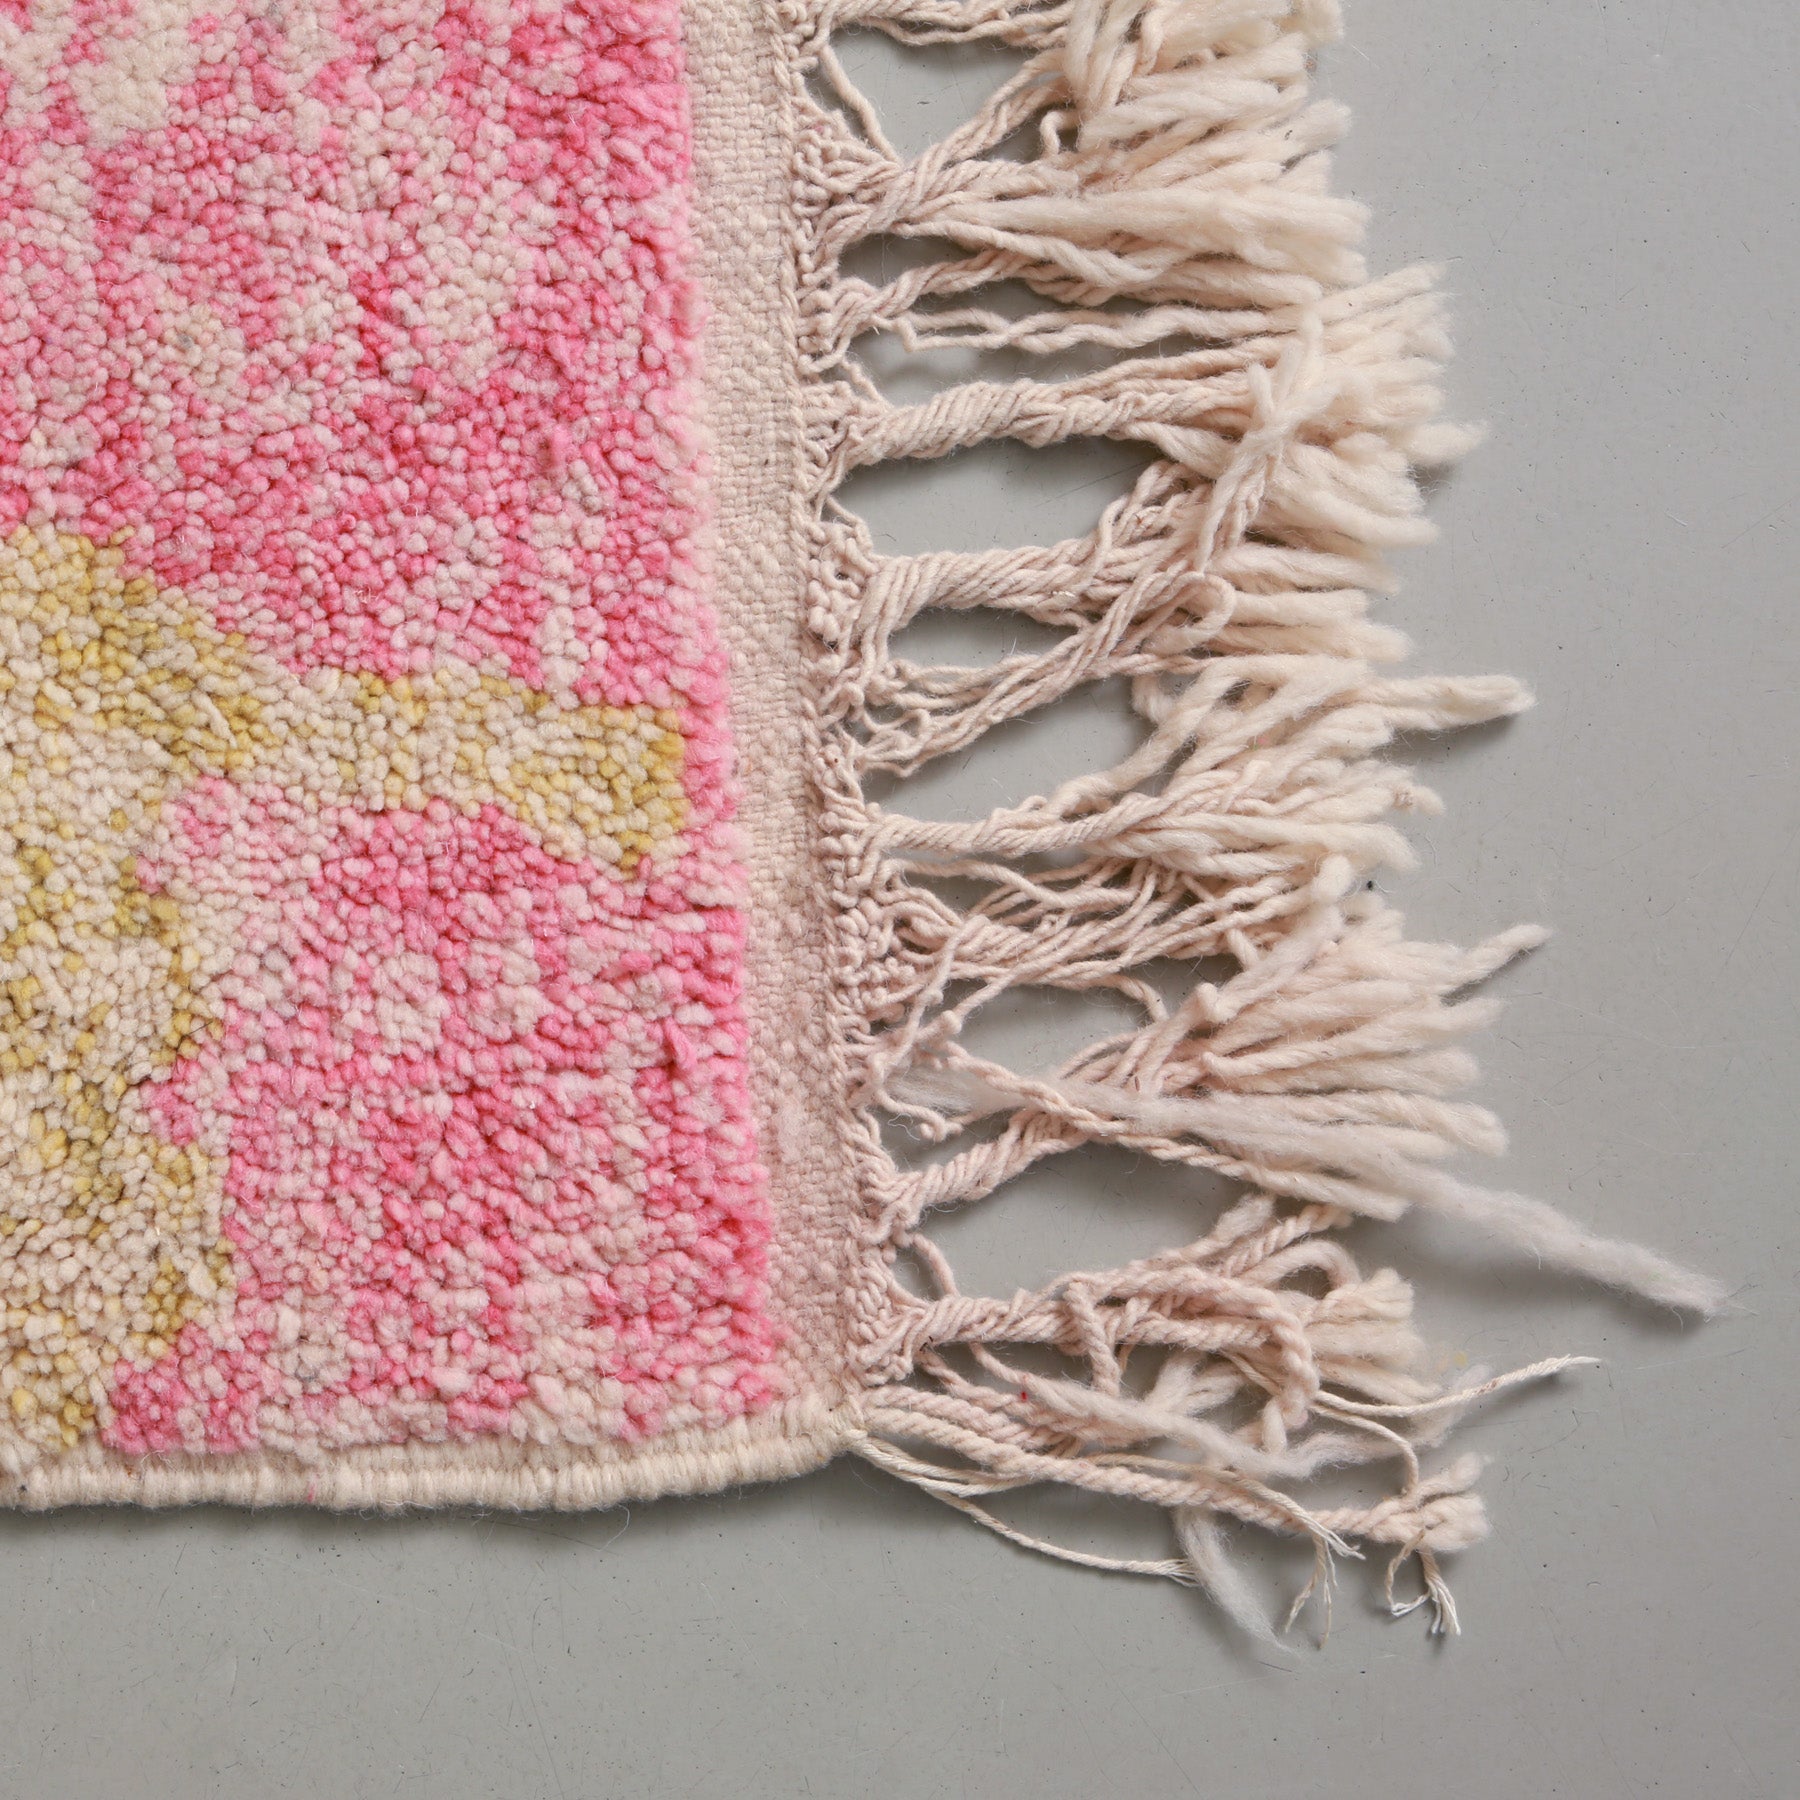 dettaglio della frangia lunga e dei colori sfumati della lana di un tappeto artigianale marocchino beni ourain